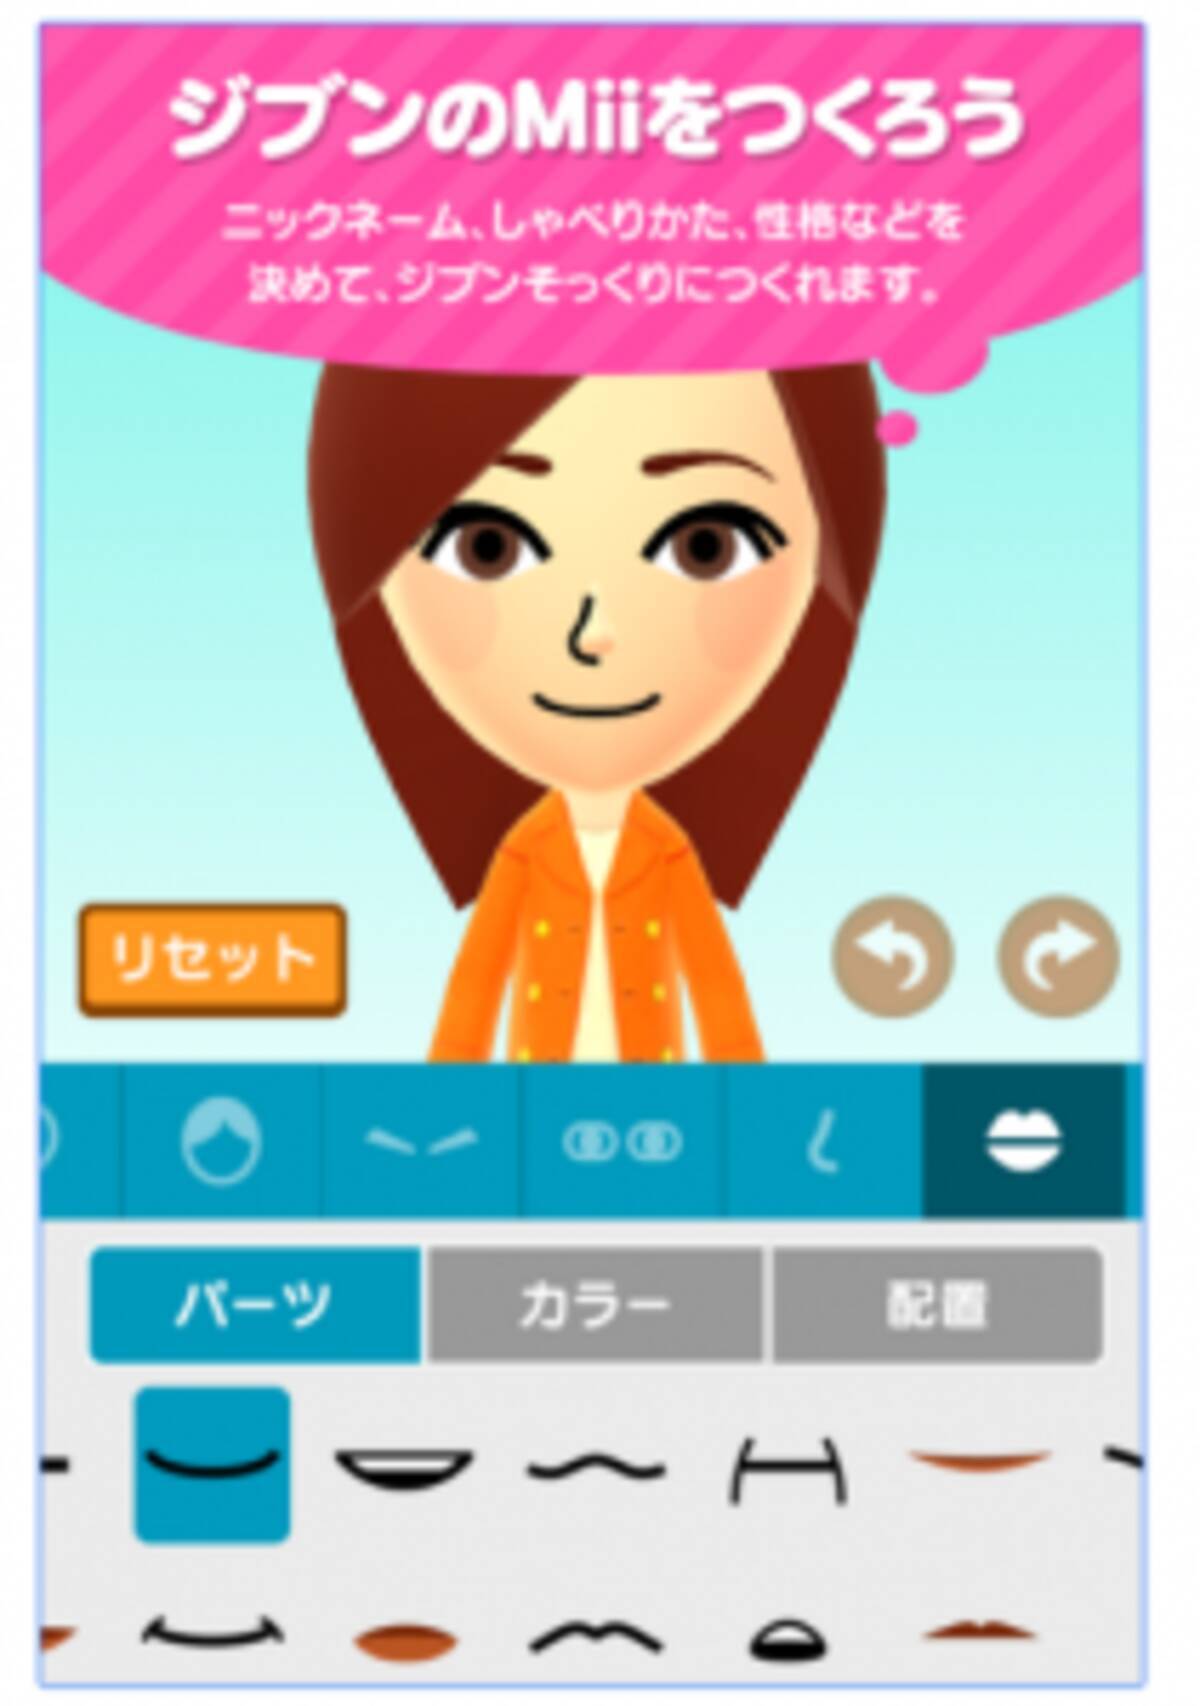 任天堂の無料アプリ Miitomo リアルすぎる Mii でコミュニケーション 16年3月28日 エキサイトニュース